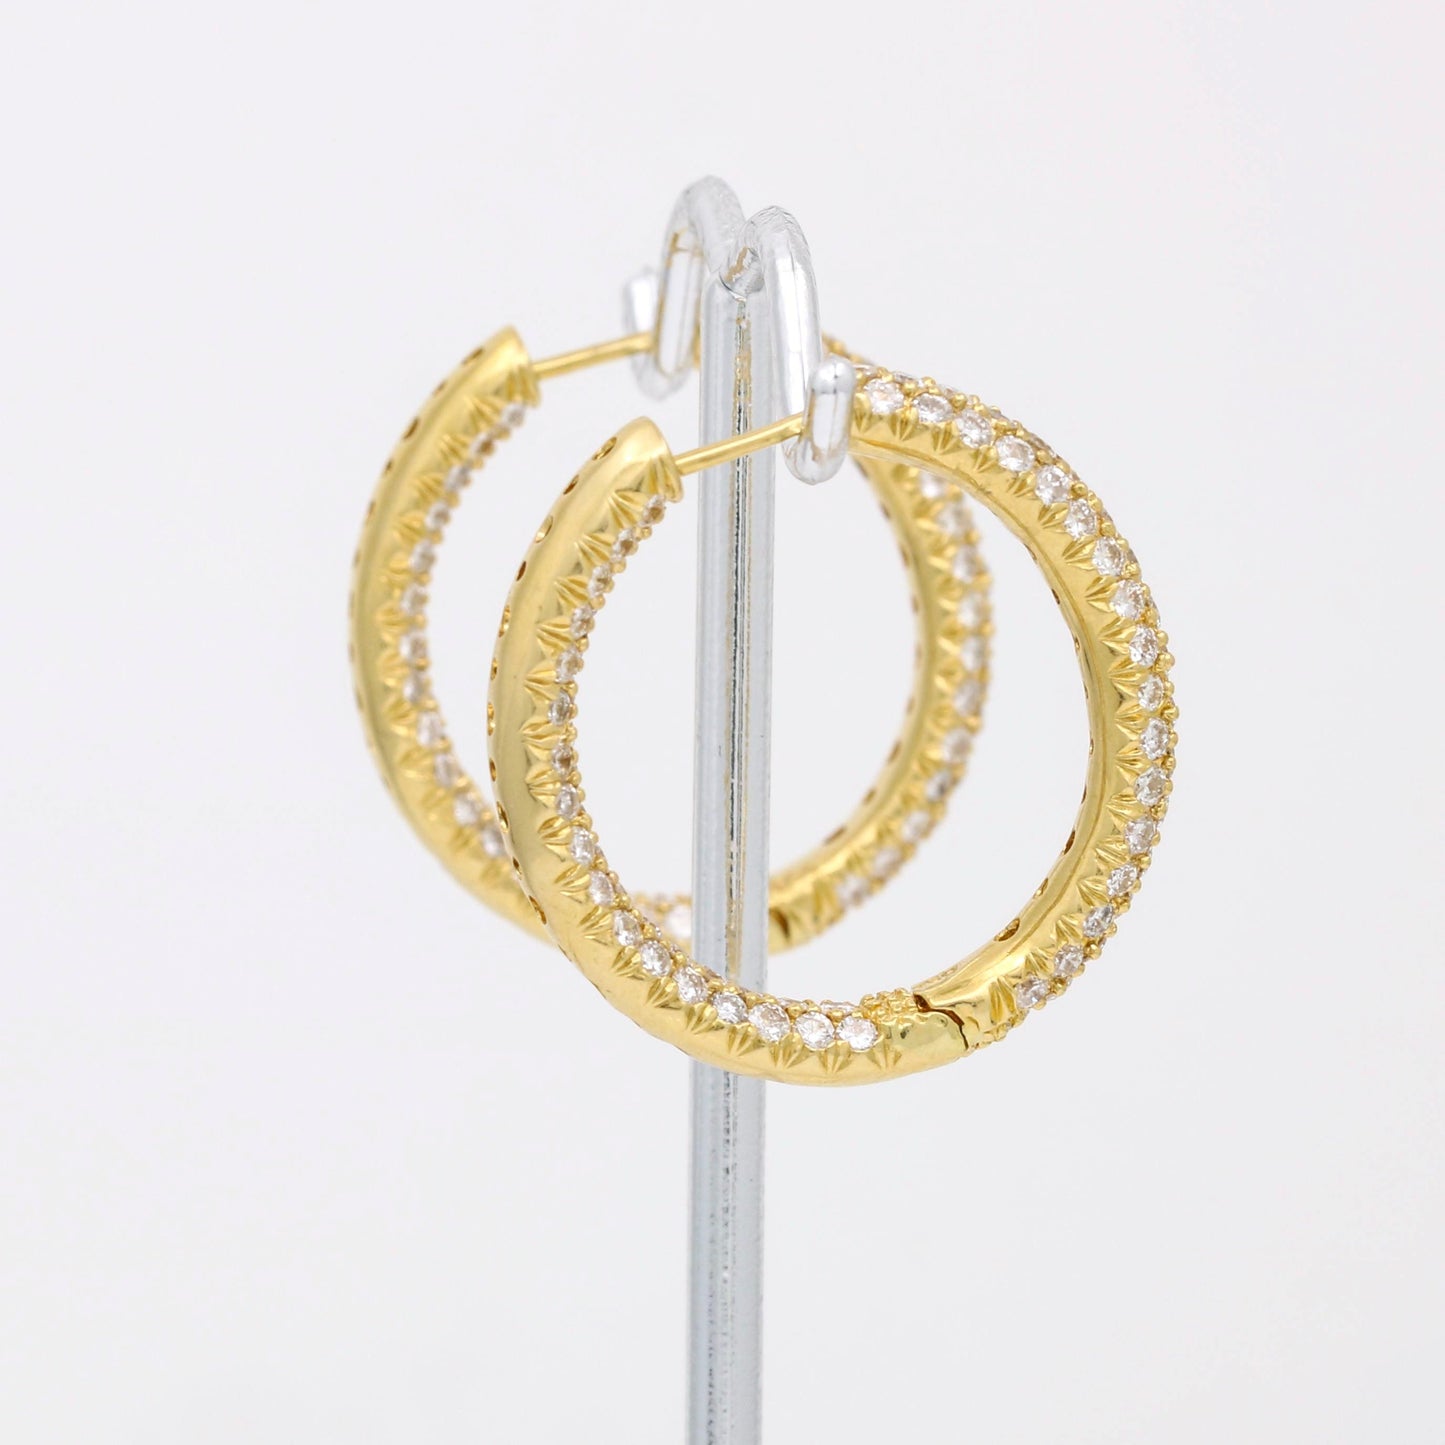 Women's Pave Diamond Hoop Earrings in 18k Yellow Gold ( 5.00 cttw ) - 31 Jewels Inc.